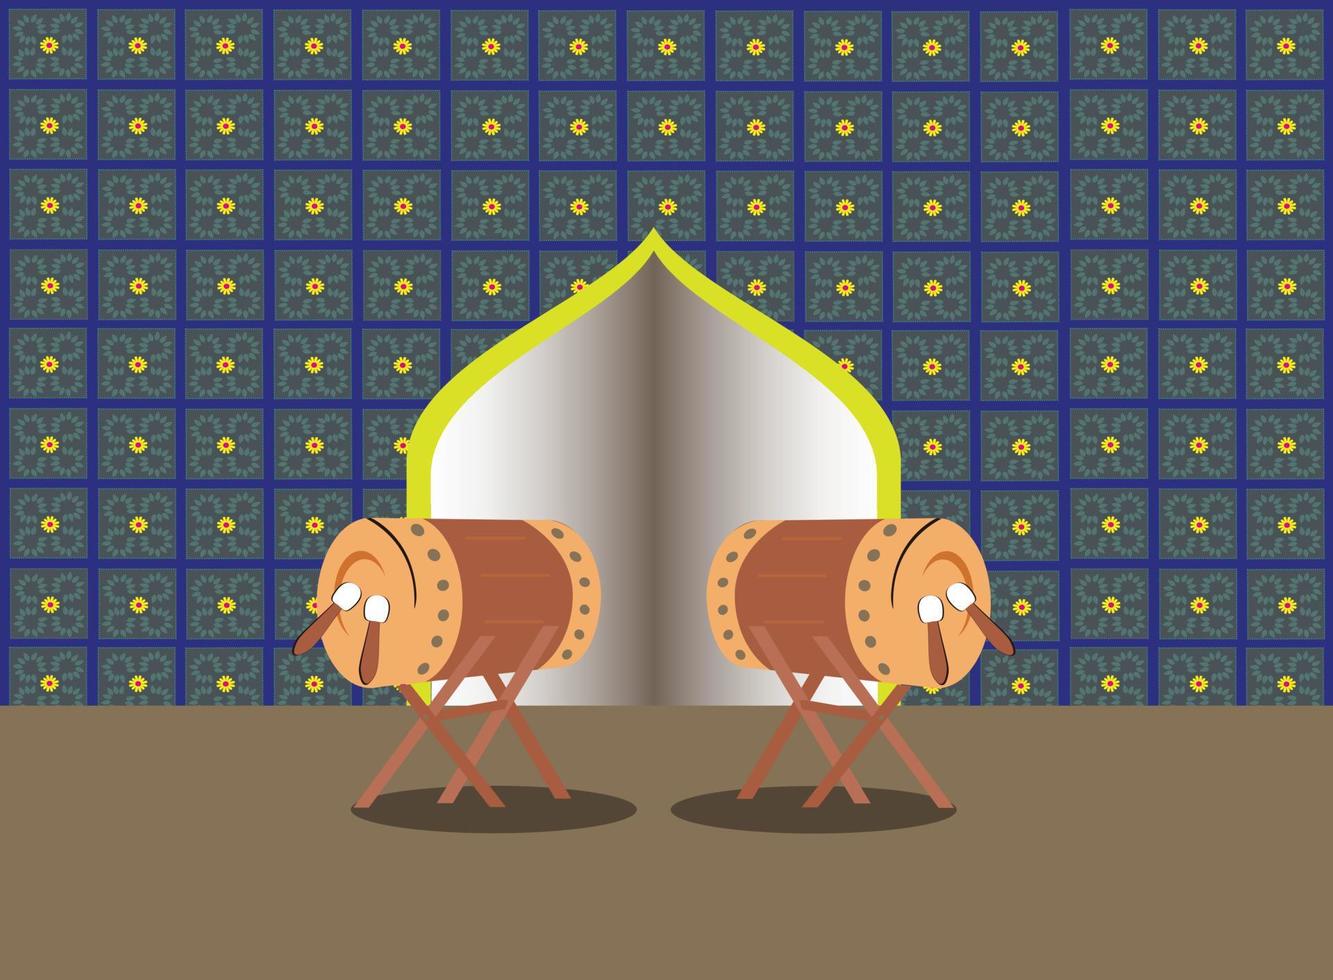 illustrazione piatta della moschea e del design del tamburo per la celebrazione delle feste islamiche. vettore